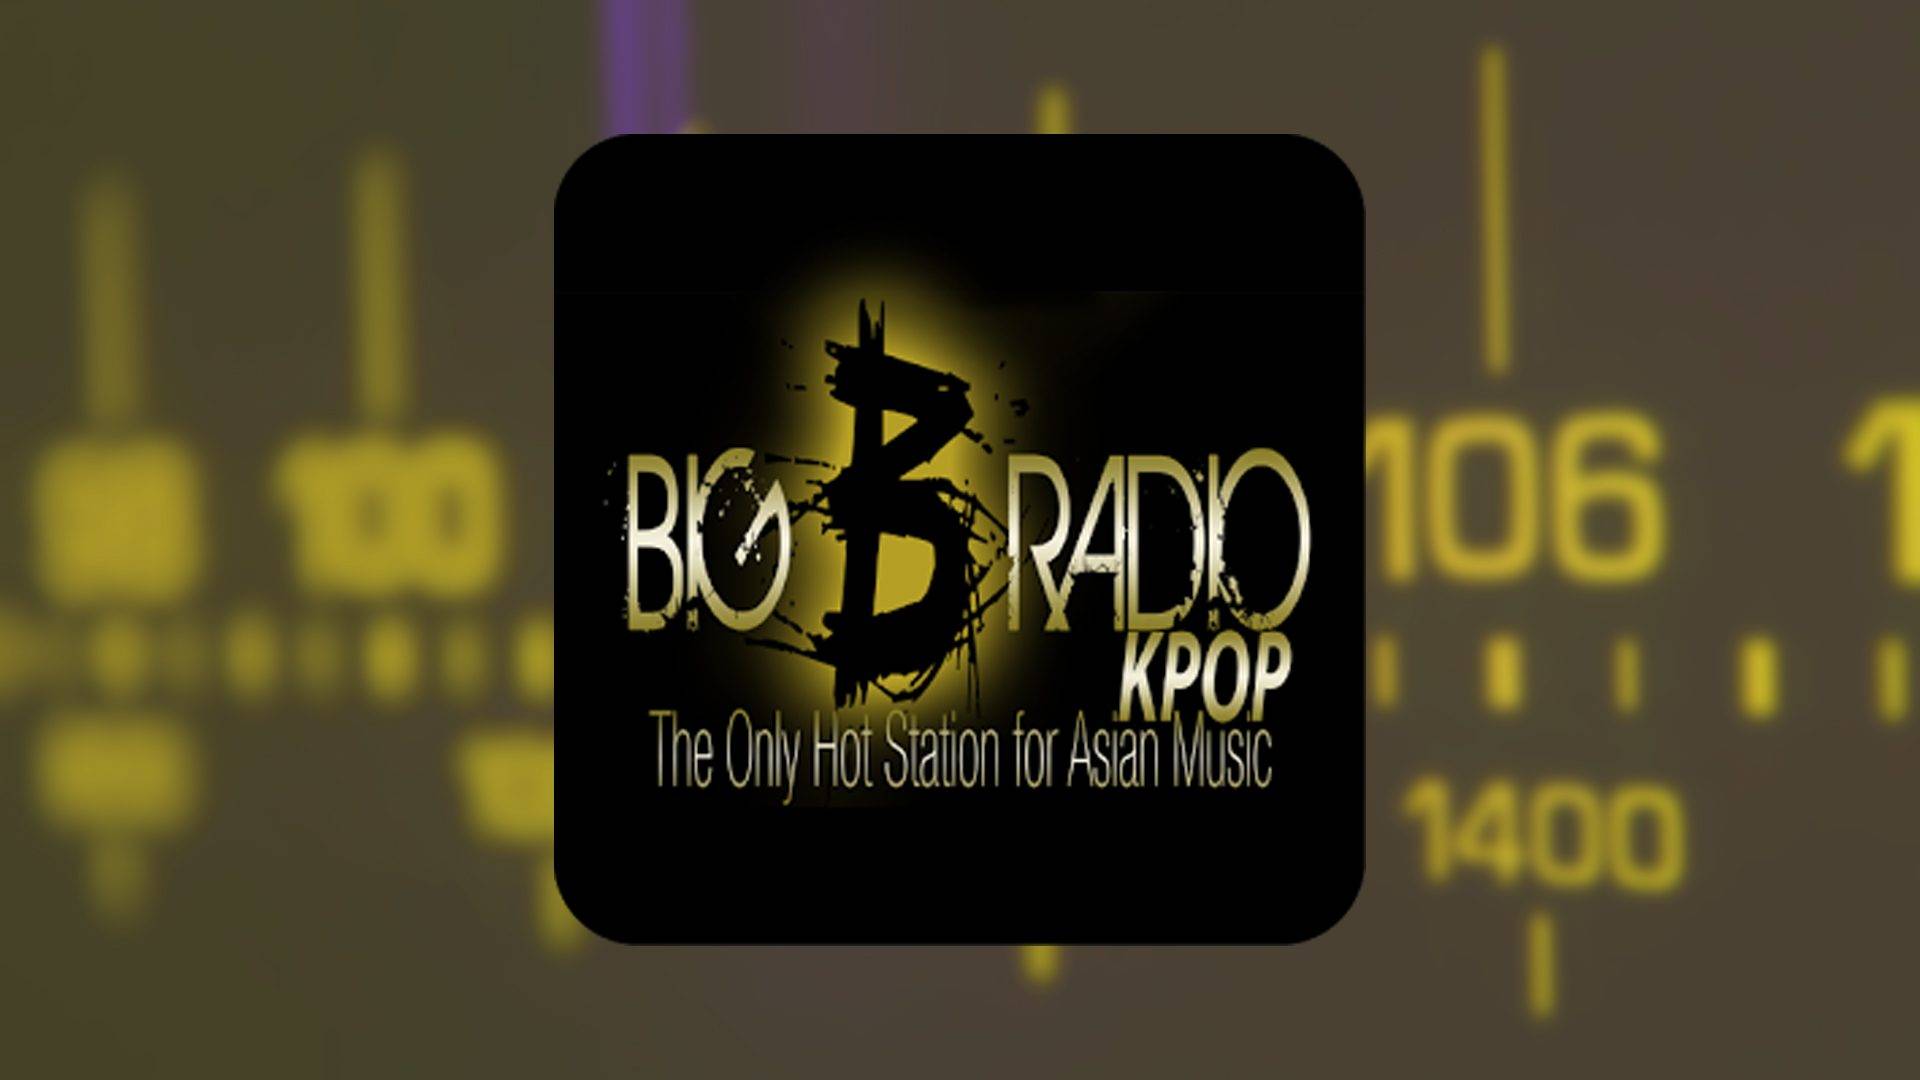 Big B Radio